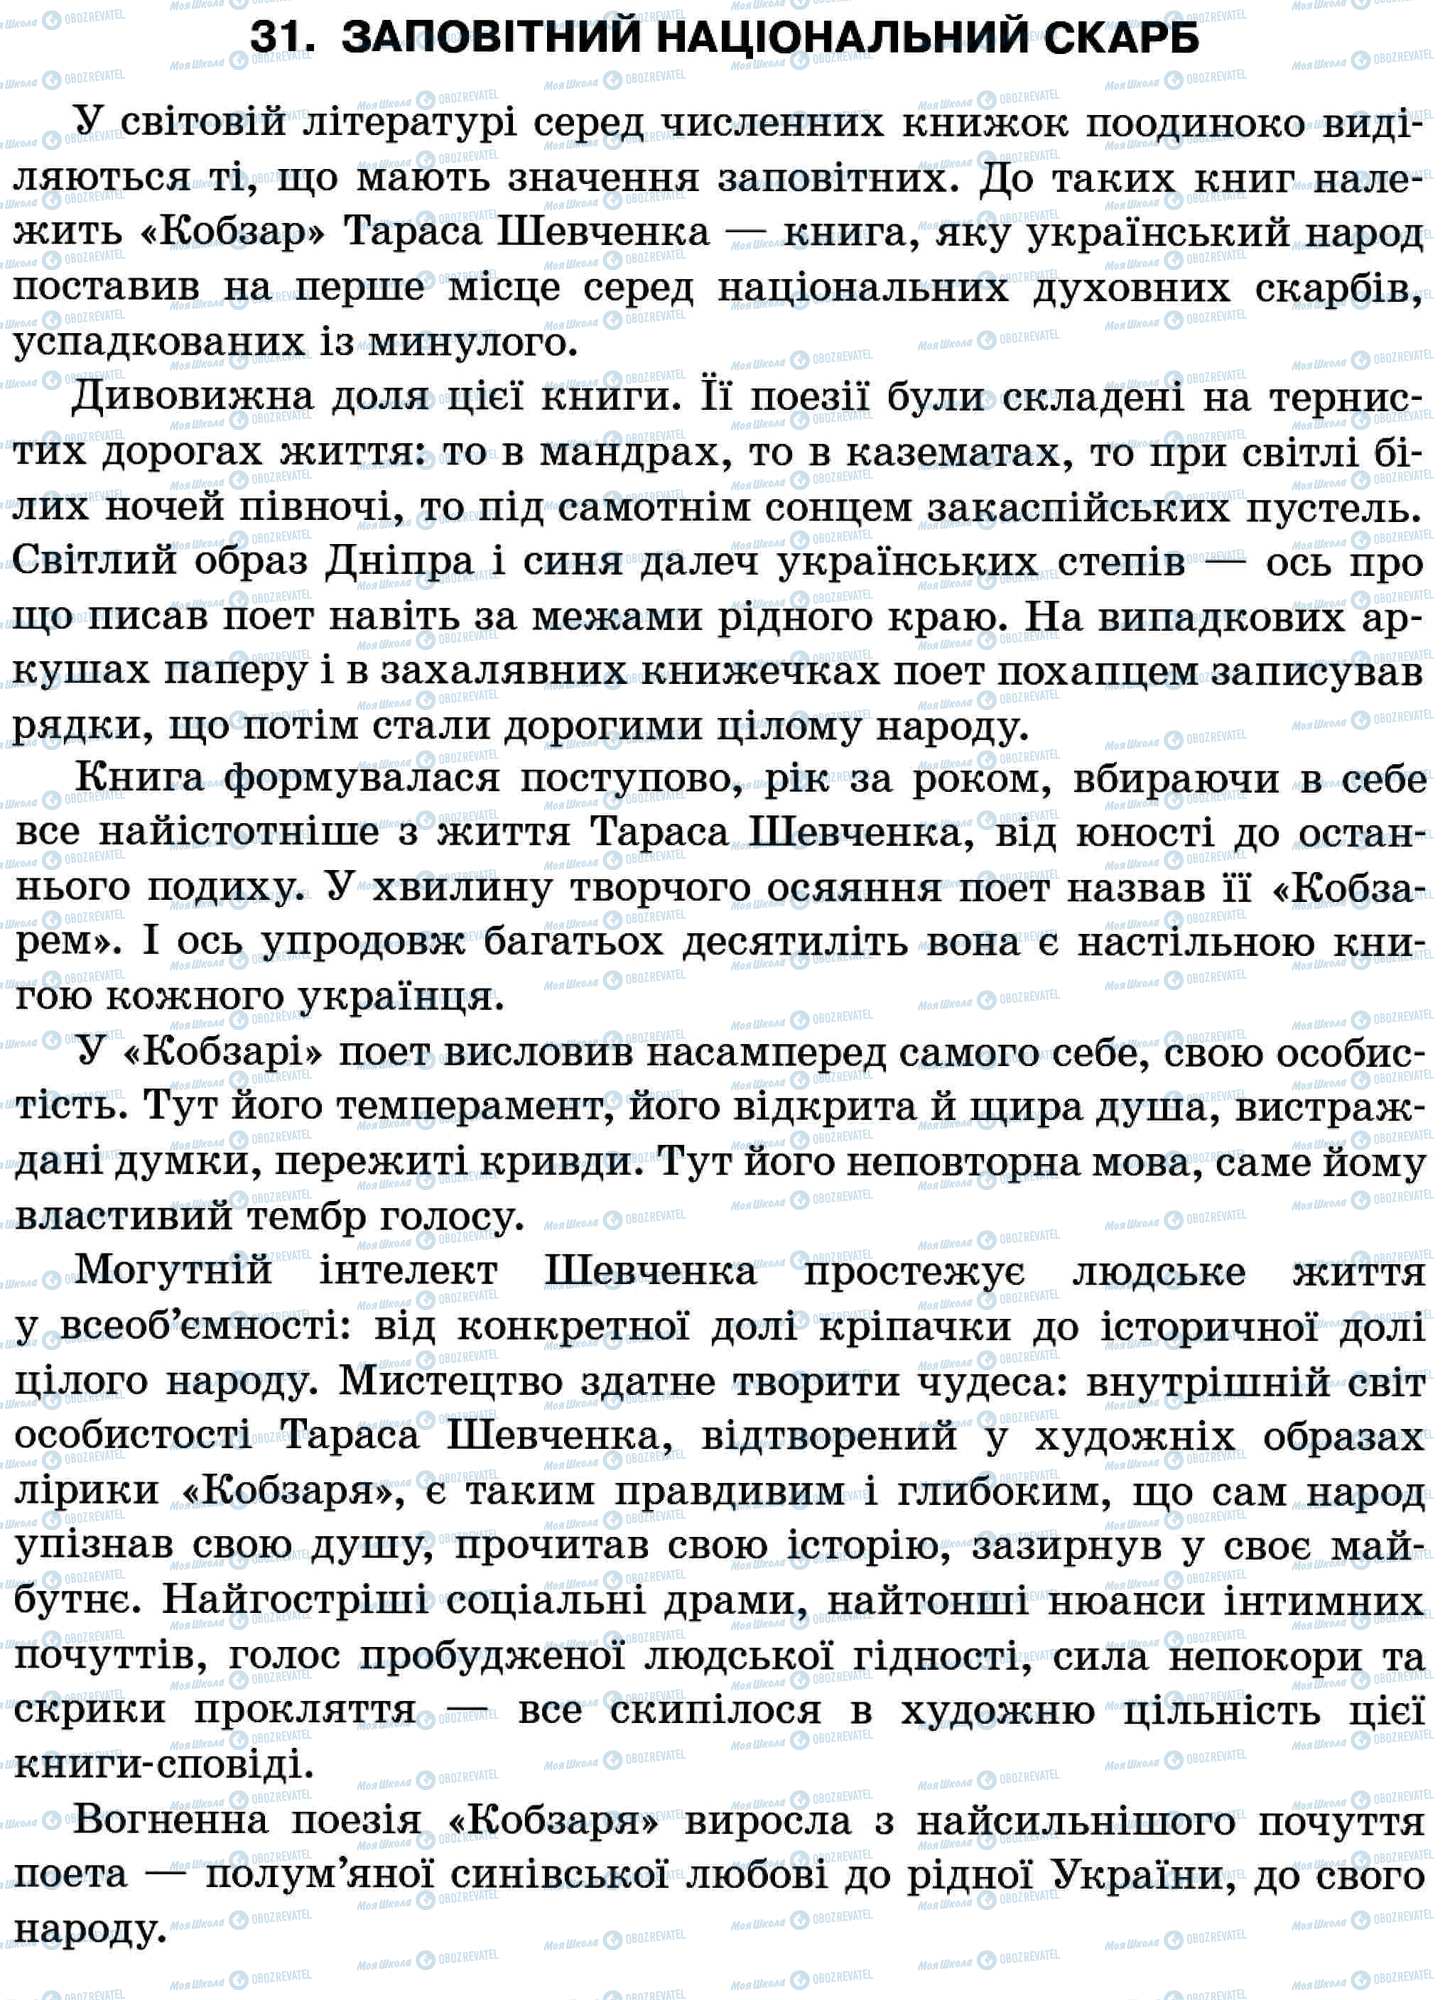 ДПА Укр мова 11 класс страница 31. Заповітний національний скарб